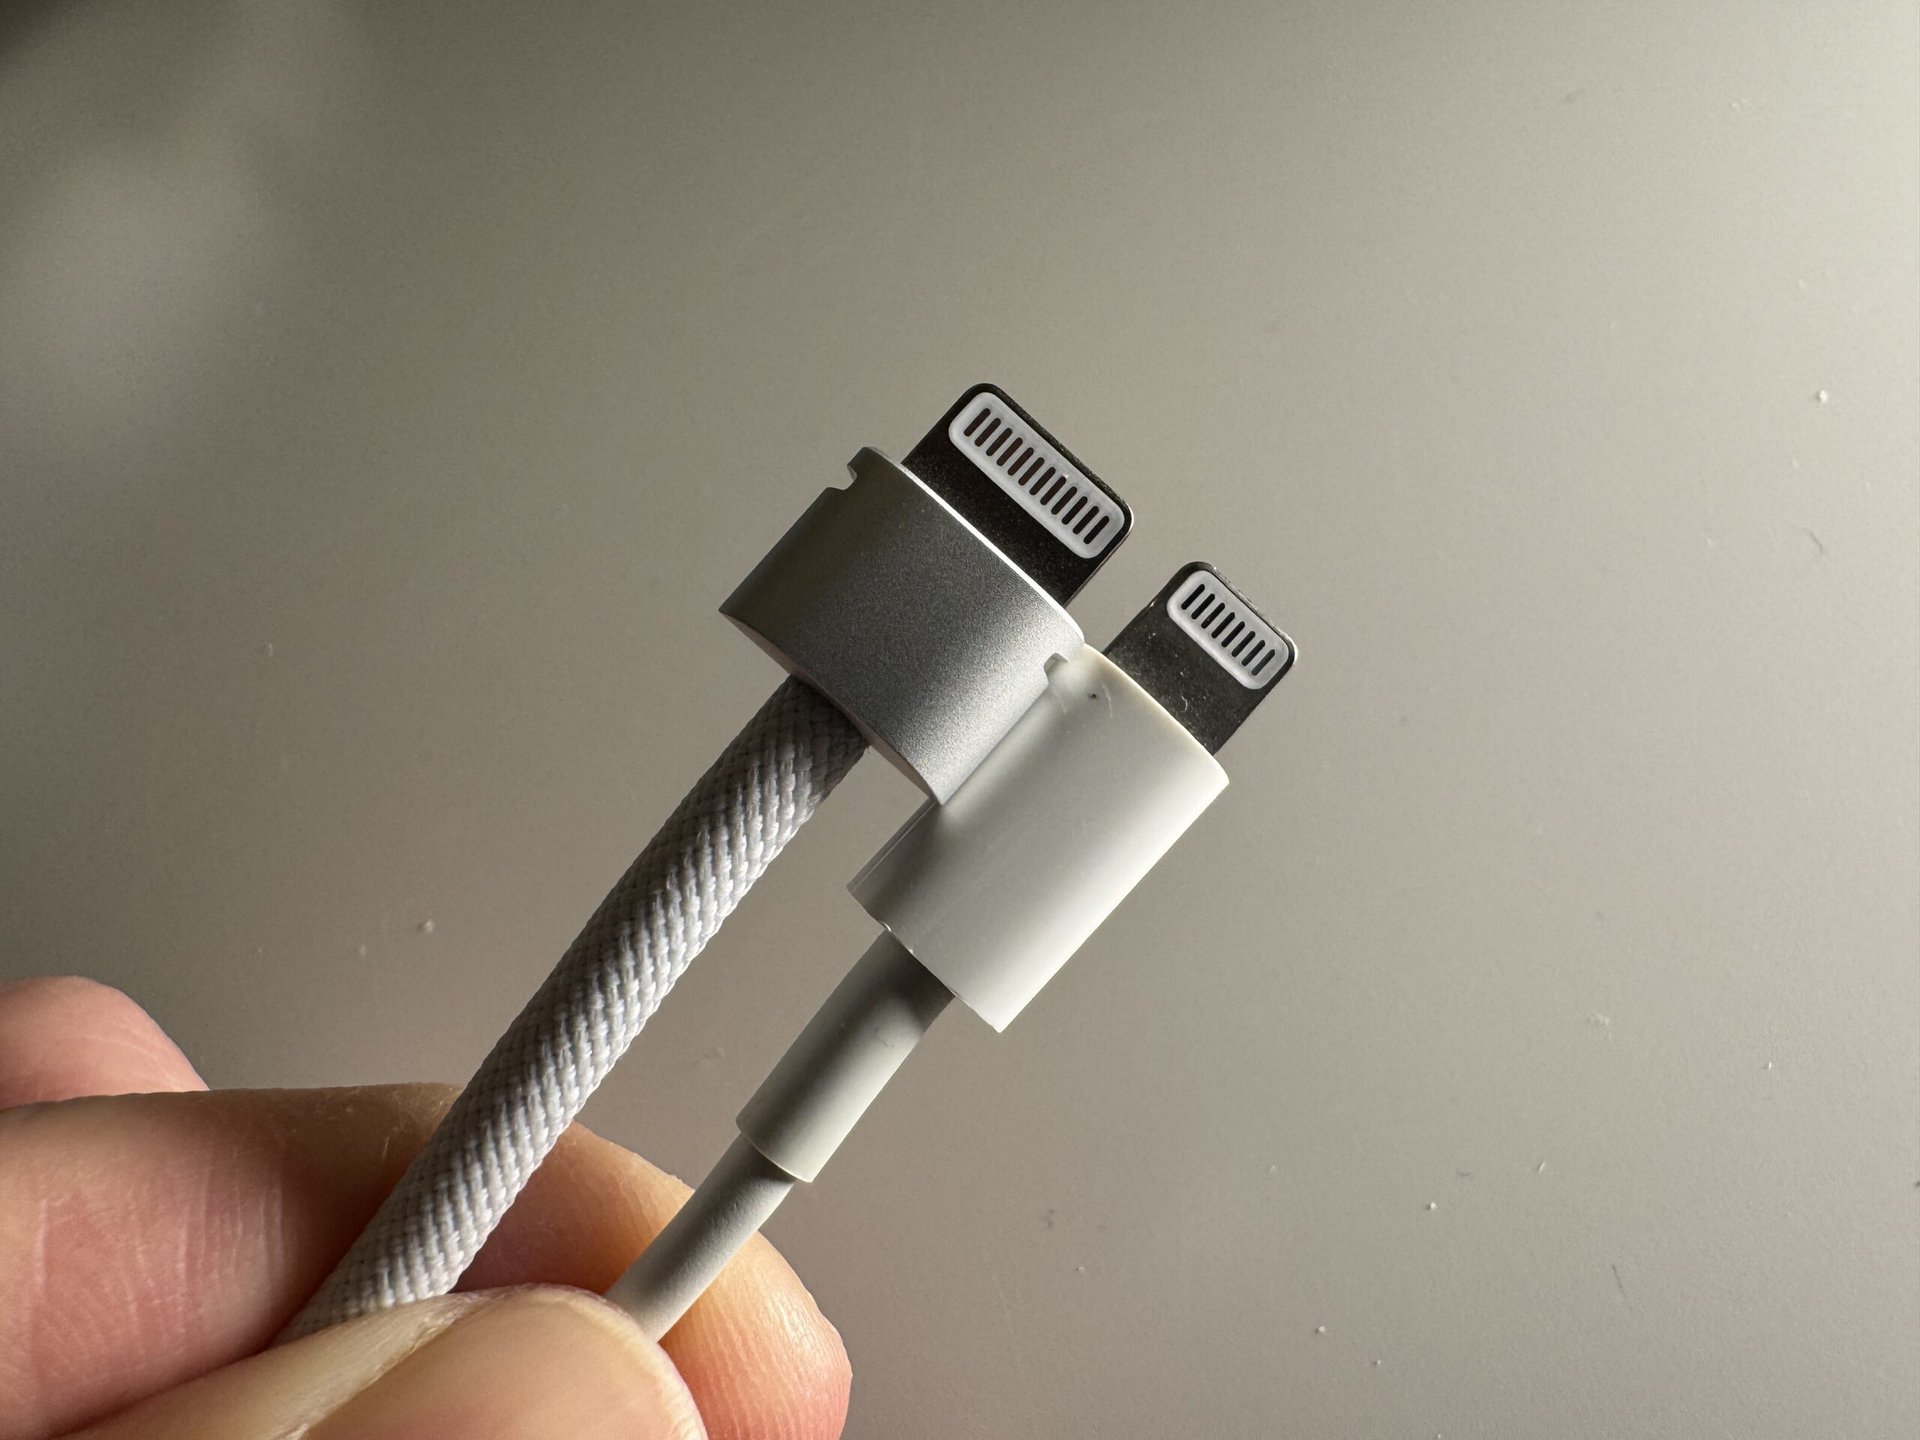 Apple Vision Pro lightning connector vs regular lightning connector